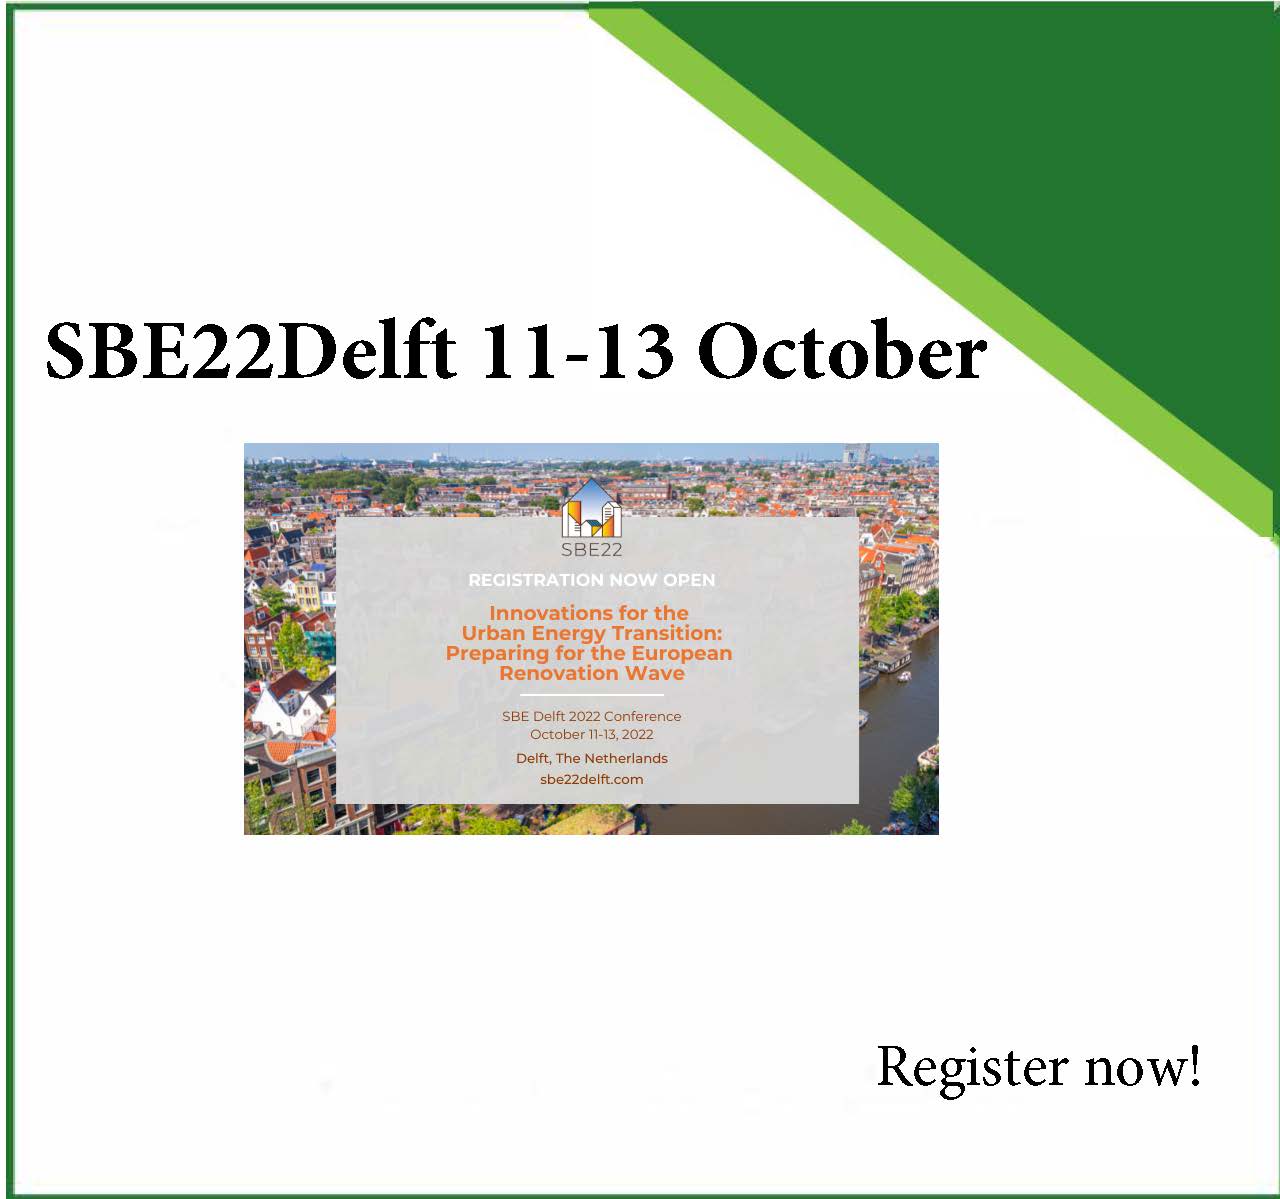 SBE 2022 11-13 October 2022 Delft, Netherlands